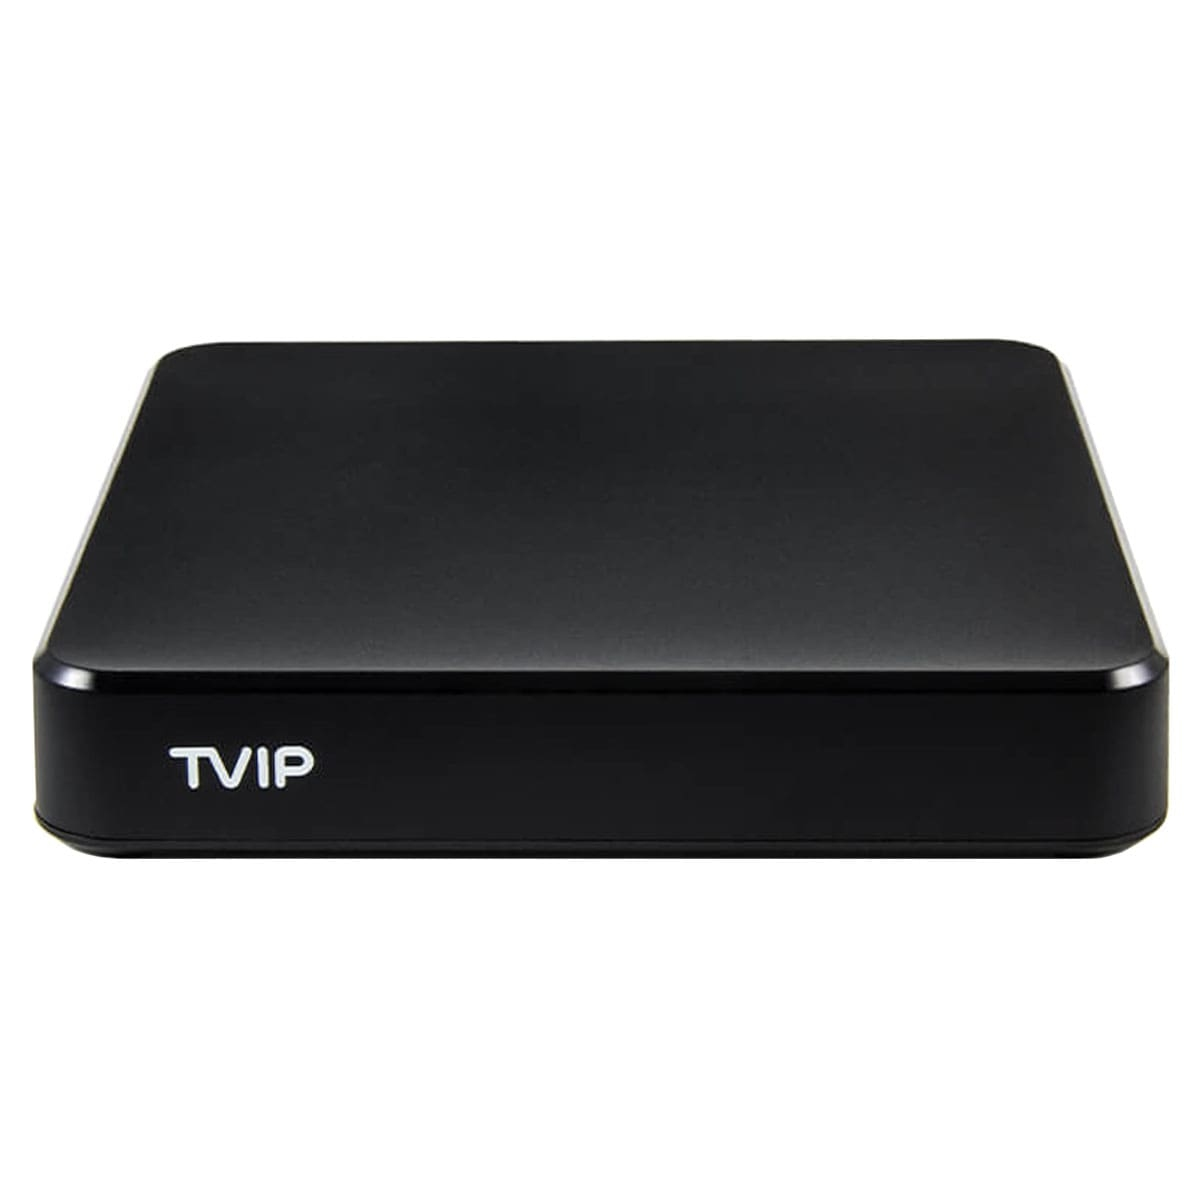 GB TVIP S-Box v.706 8